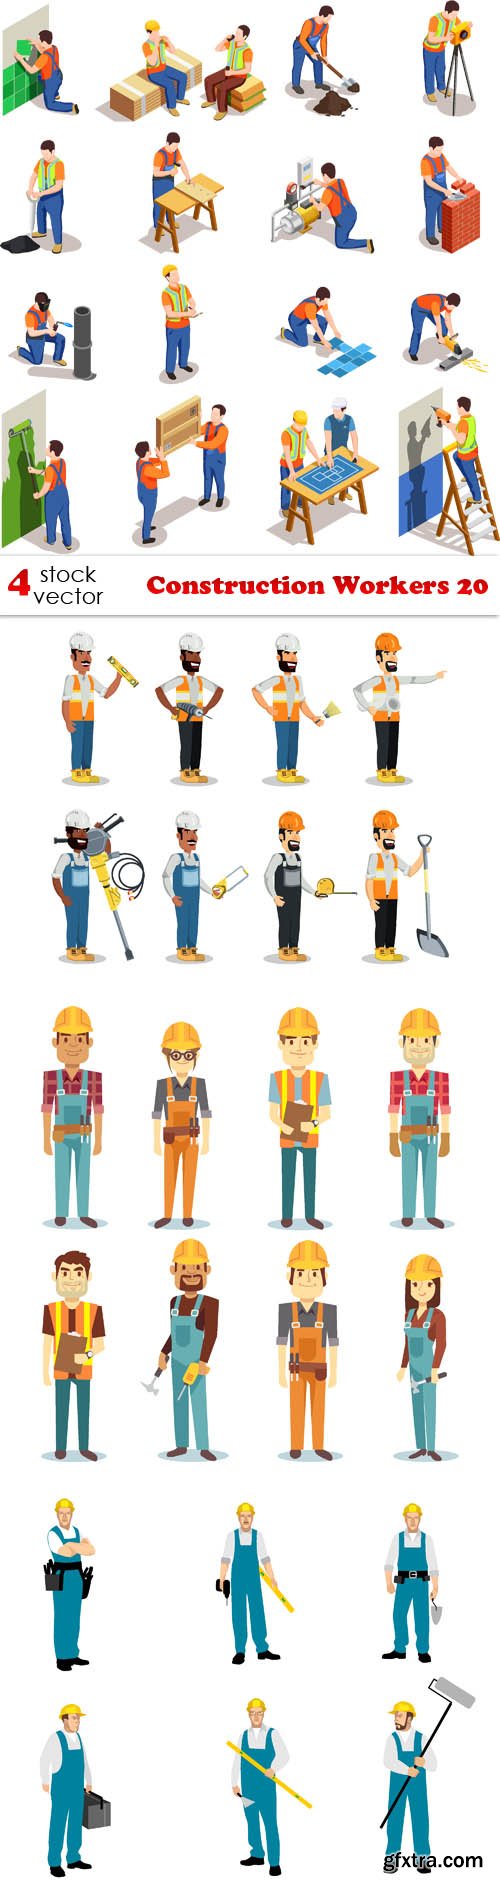 Vectors - Construction Workers 20